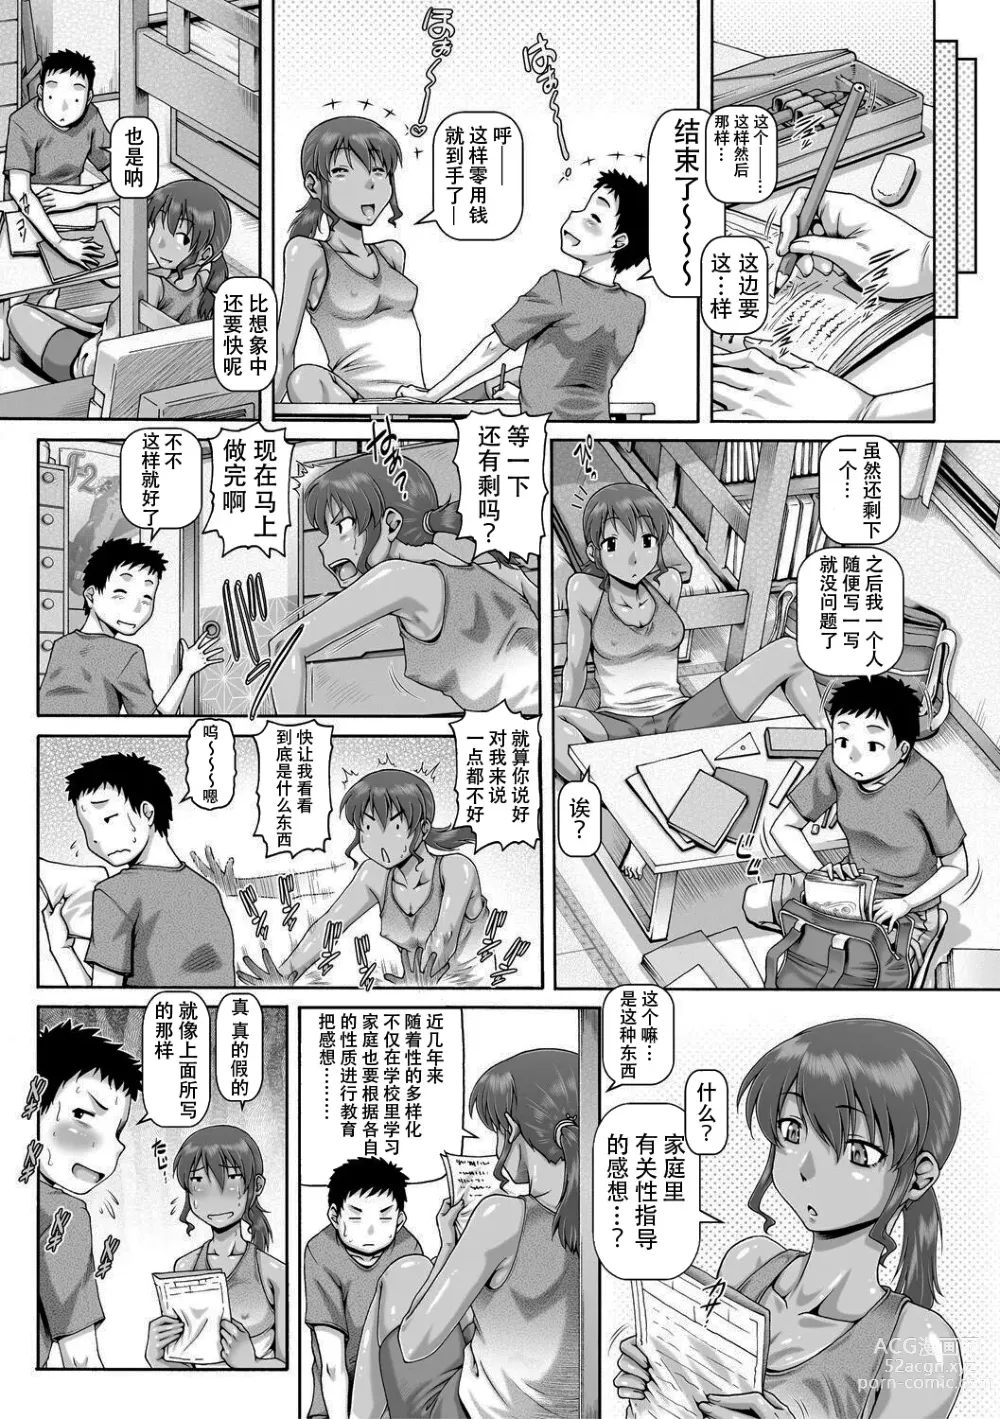 Page 7 of manga Natsuyasumi no onechan kyozai